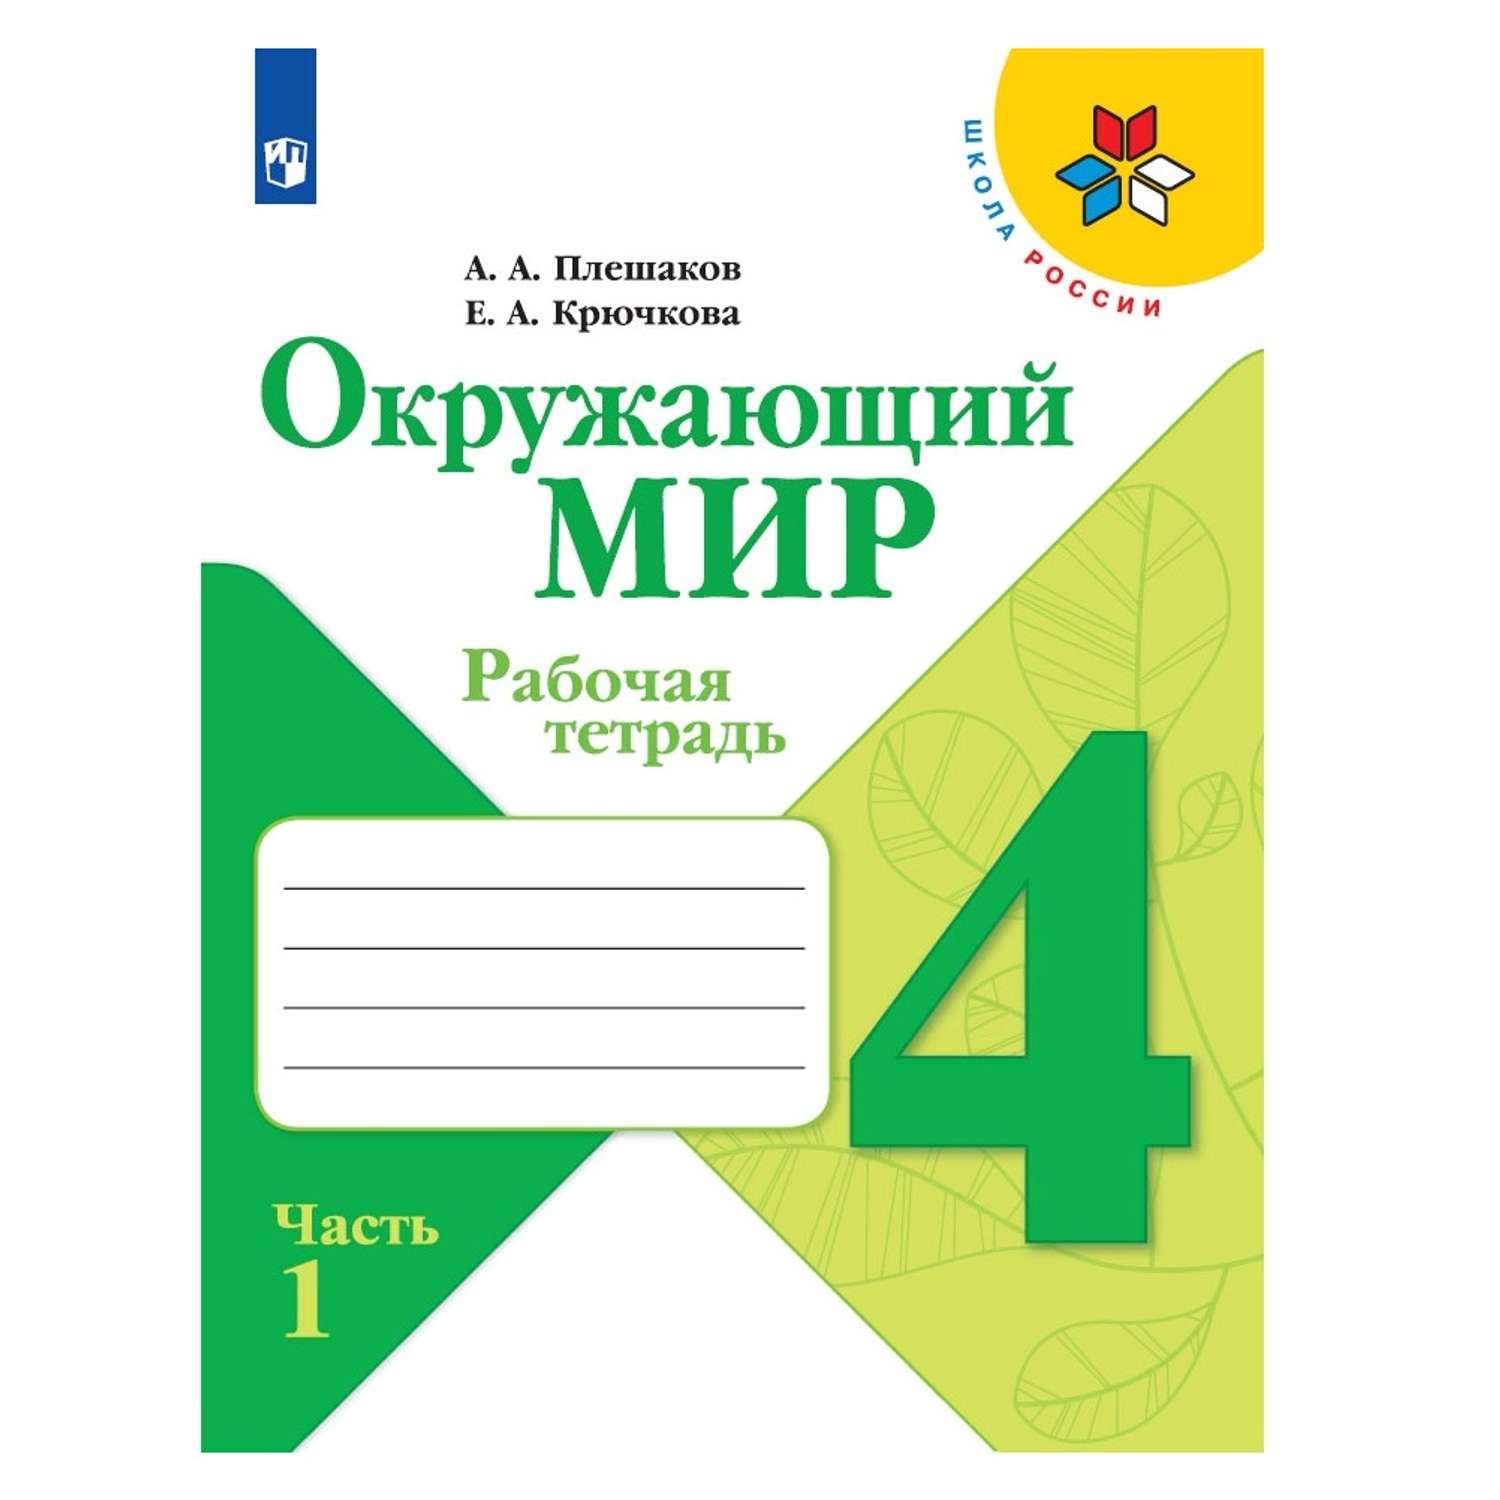 Окружающий мир 1 класс учебники школа России часть 1 и 2 - купить в Москве